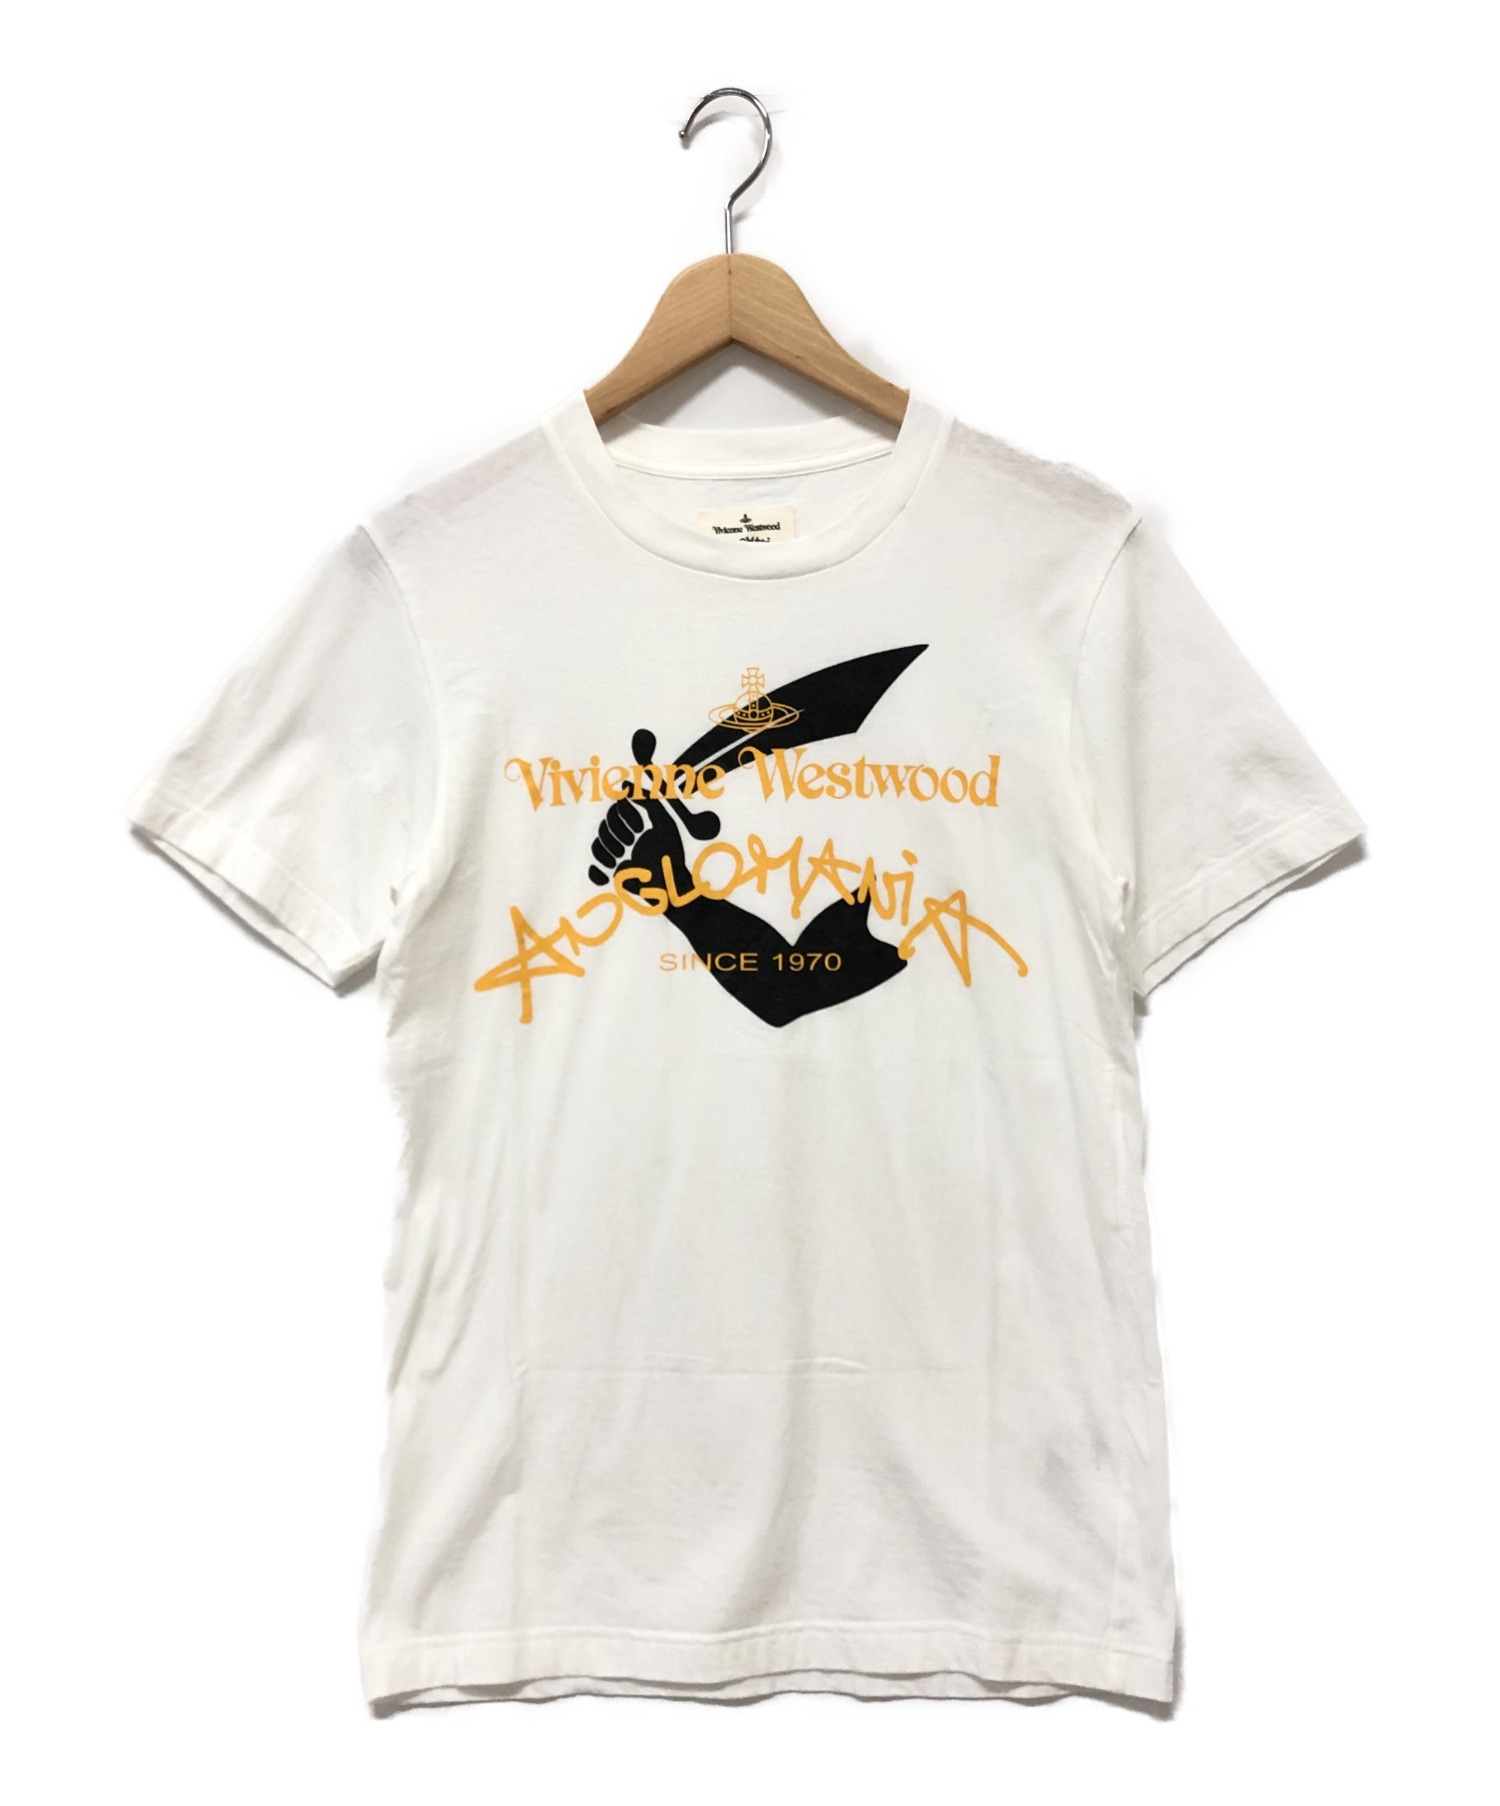 【のデザイン】 Vivienne Westwood - ヴィヴィアンウエストウッド アングロマニア 38 M シャツ ホワイトの通販 by